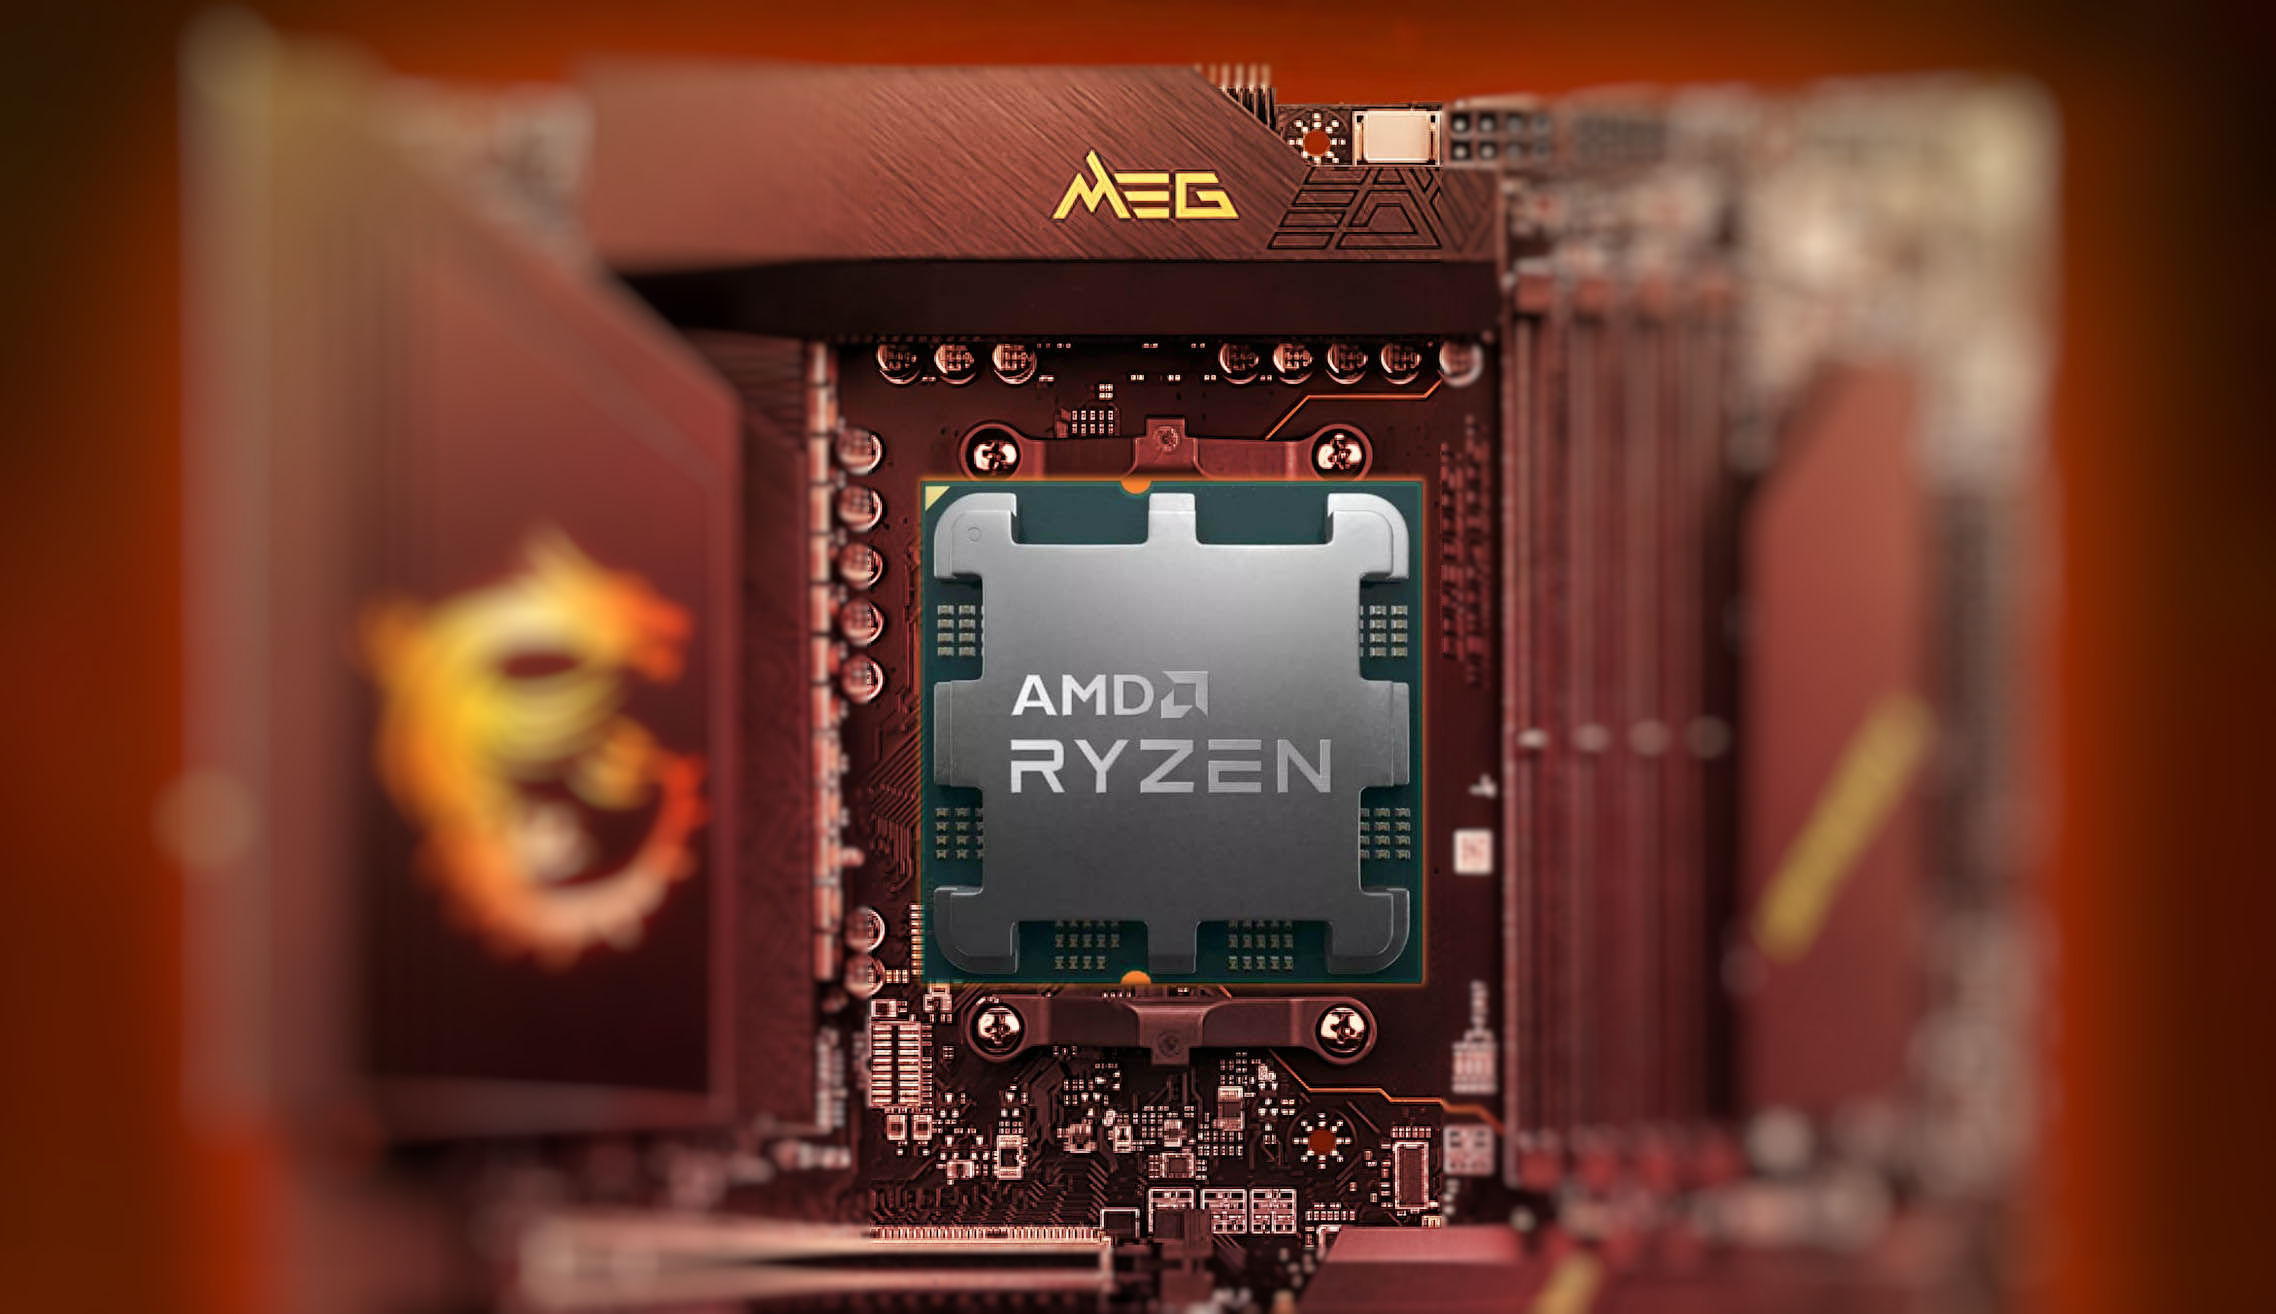 AMD Ryzen 7 7700 -8 Core 16 Thread Socket AM5 65W w/AMD Radeon